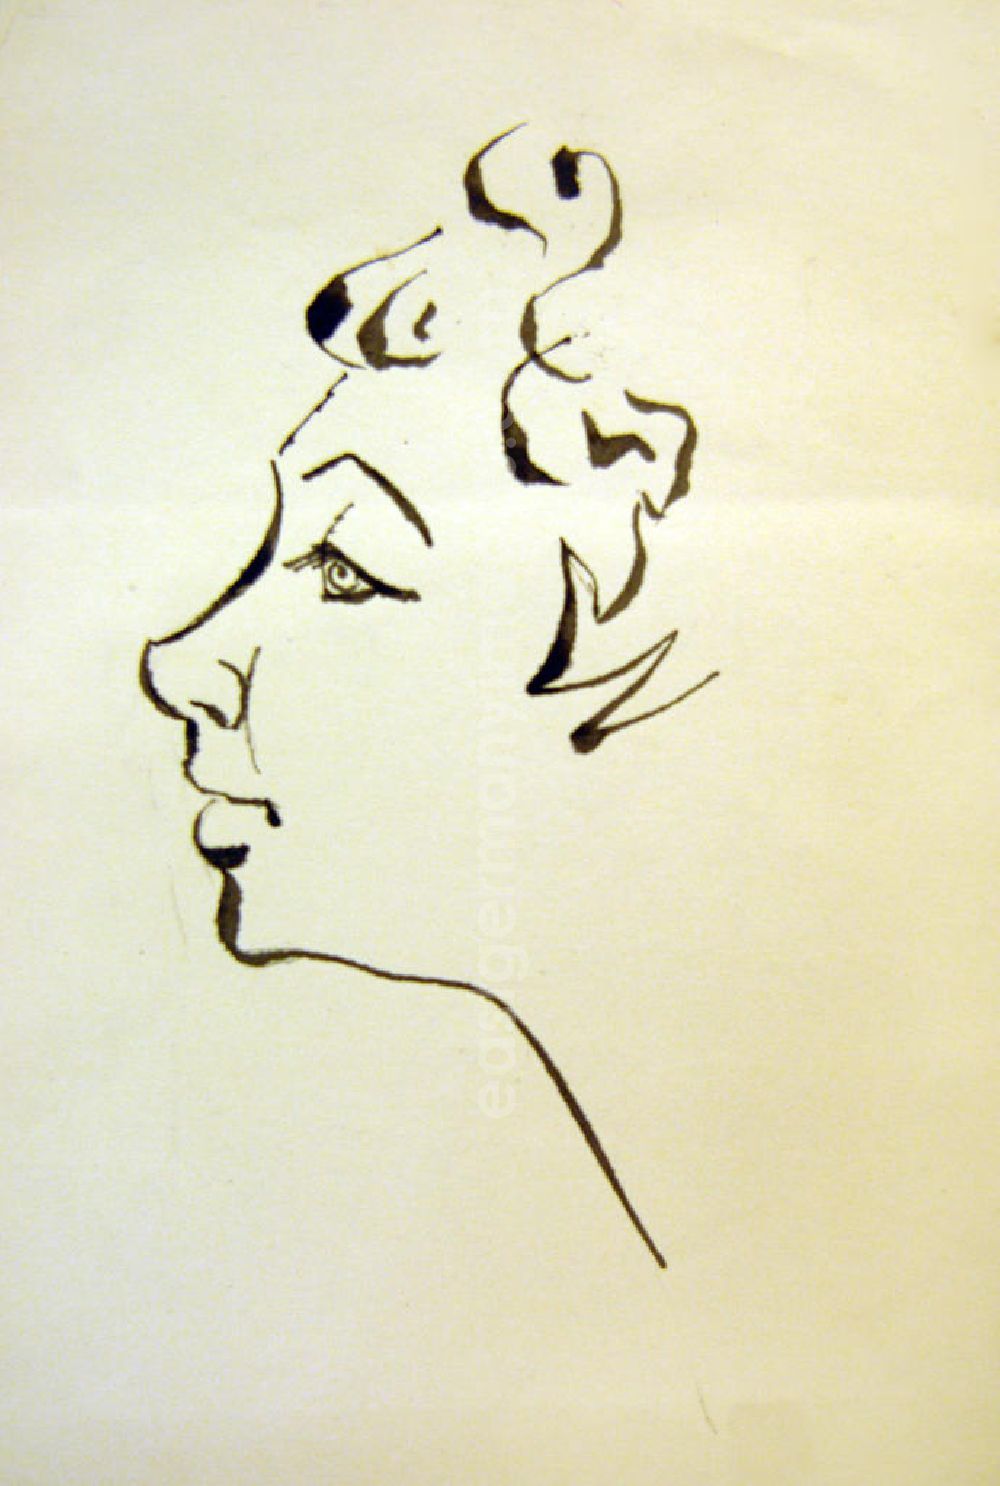 GDR picture archive: Berlin - Zeichnung von Herbert Sandberg Frau im Profil 9,5x18,5cm Feder und Pinsel. Eine junge Frau mit Locken im Profil.